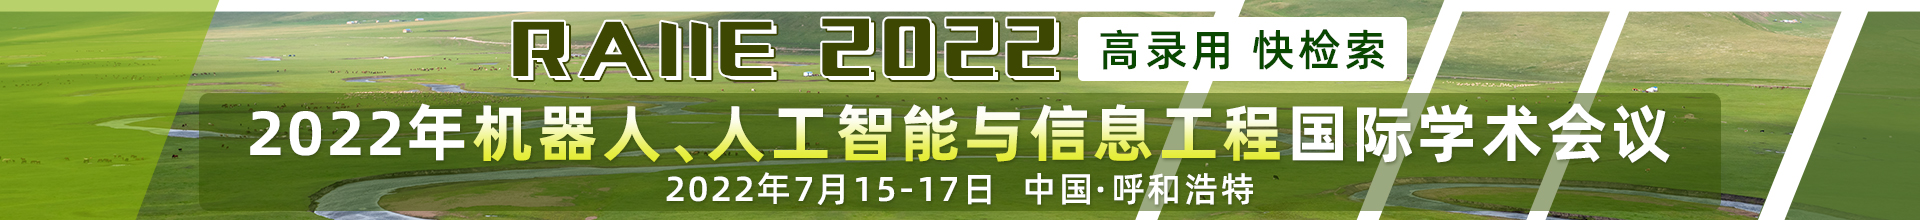 7月呼和浩特-RAIIE-2022-学术会议云PC端1920x220-陈军-20220308.jpg